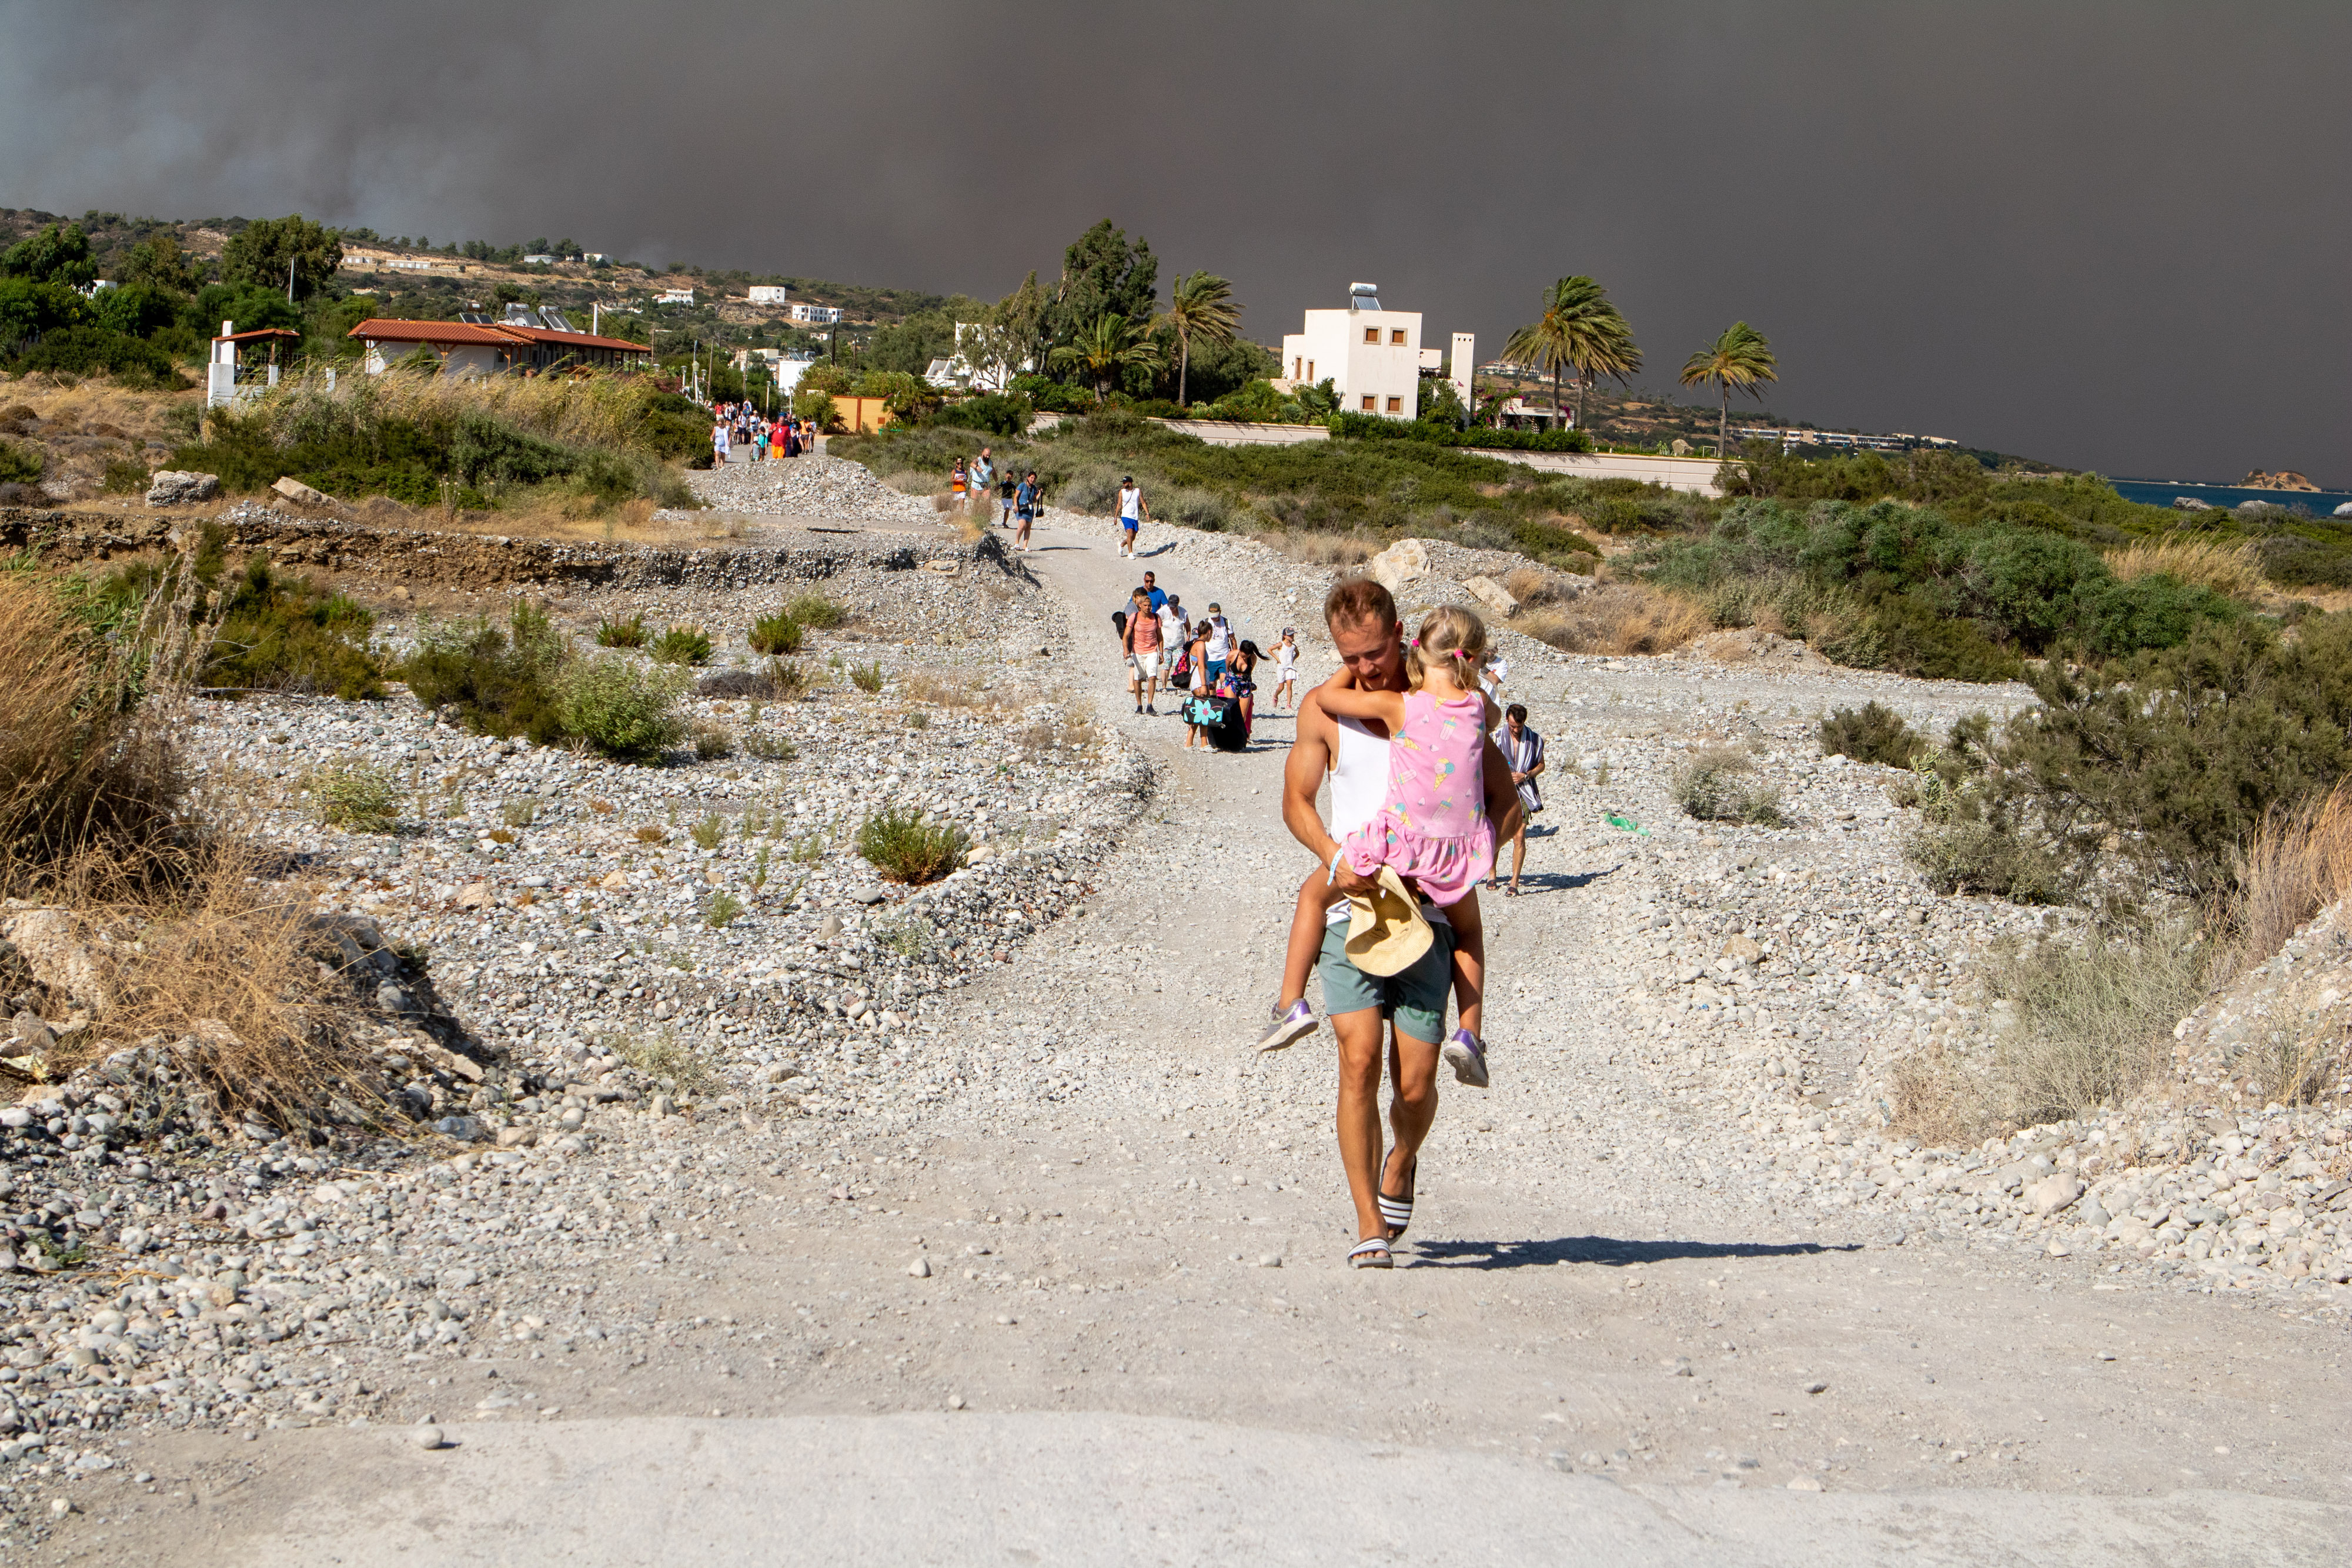 Bilder zeigten Kolonnen von Menschen, die aus Dörfern und Ferienorten auf der Insel Rhodos flohen